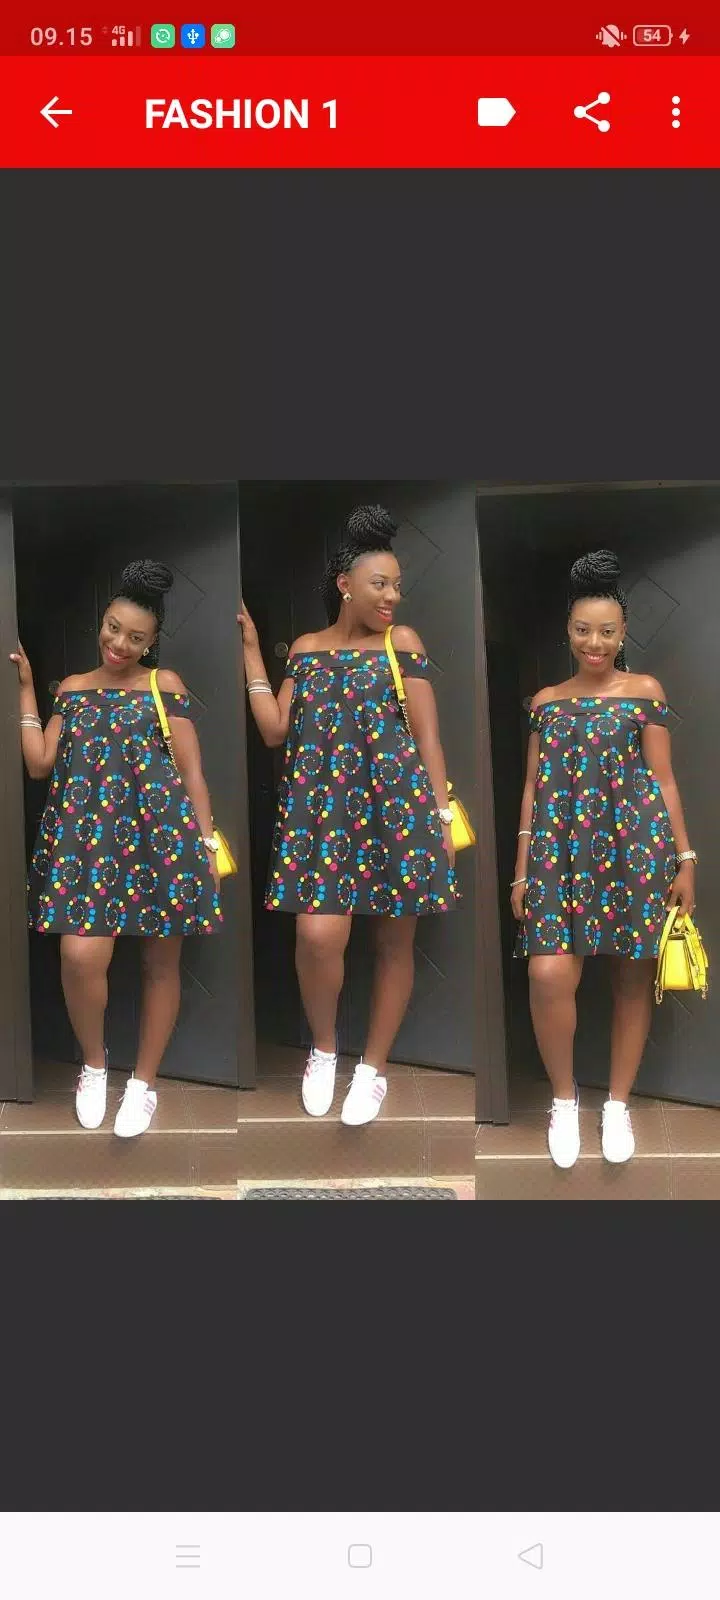 de APK Últimos vestidos africanos de moda mujeres para Android